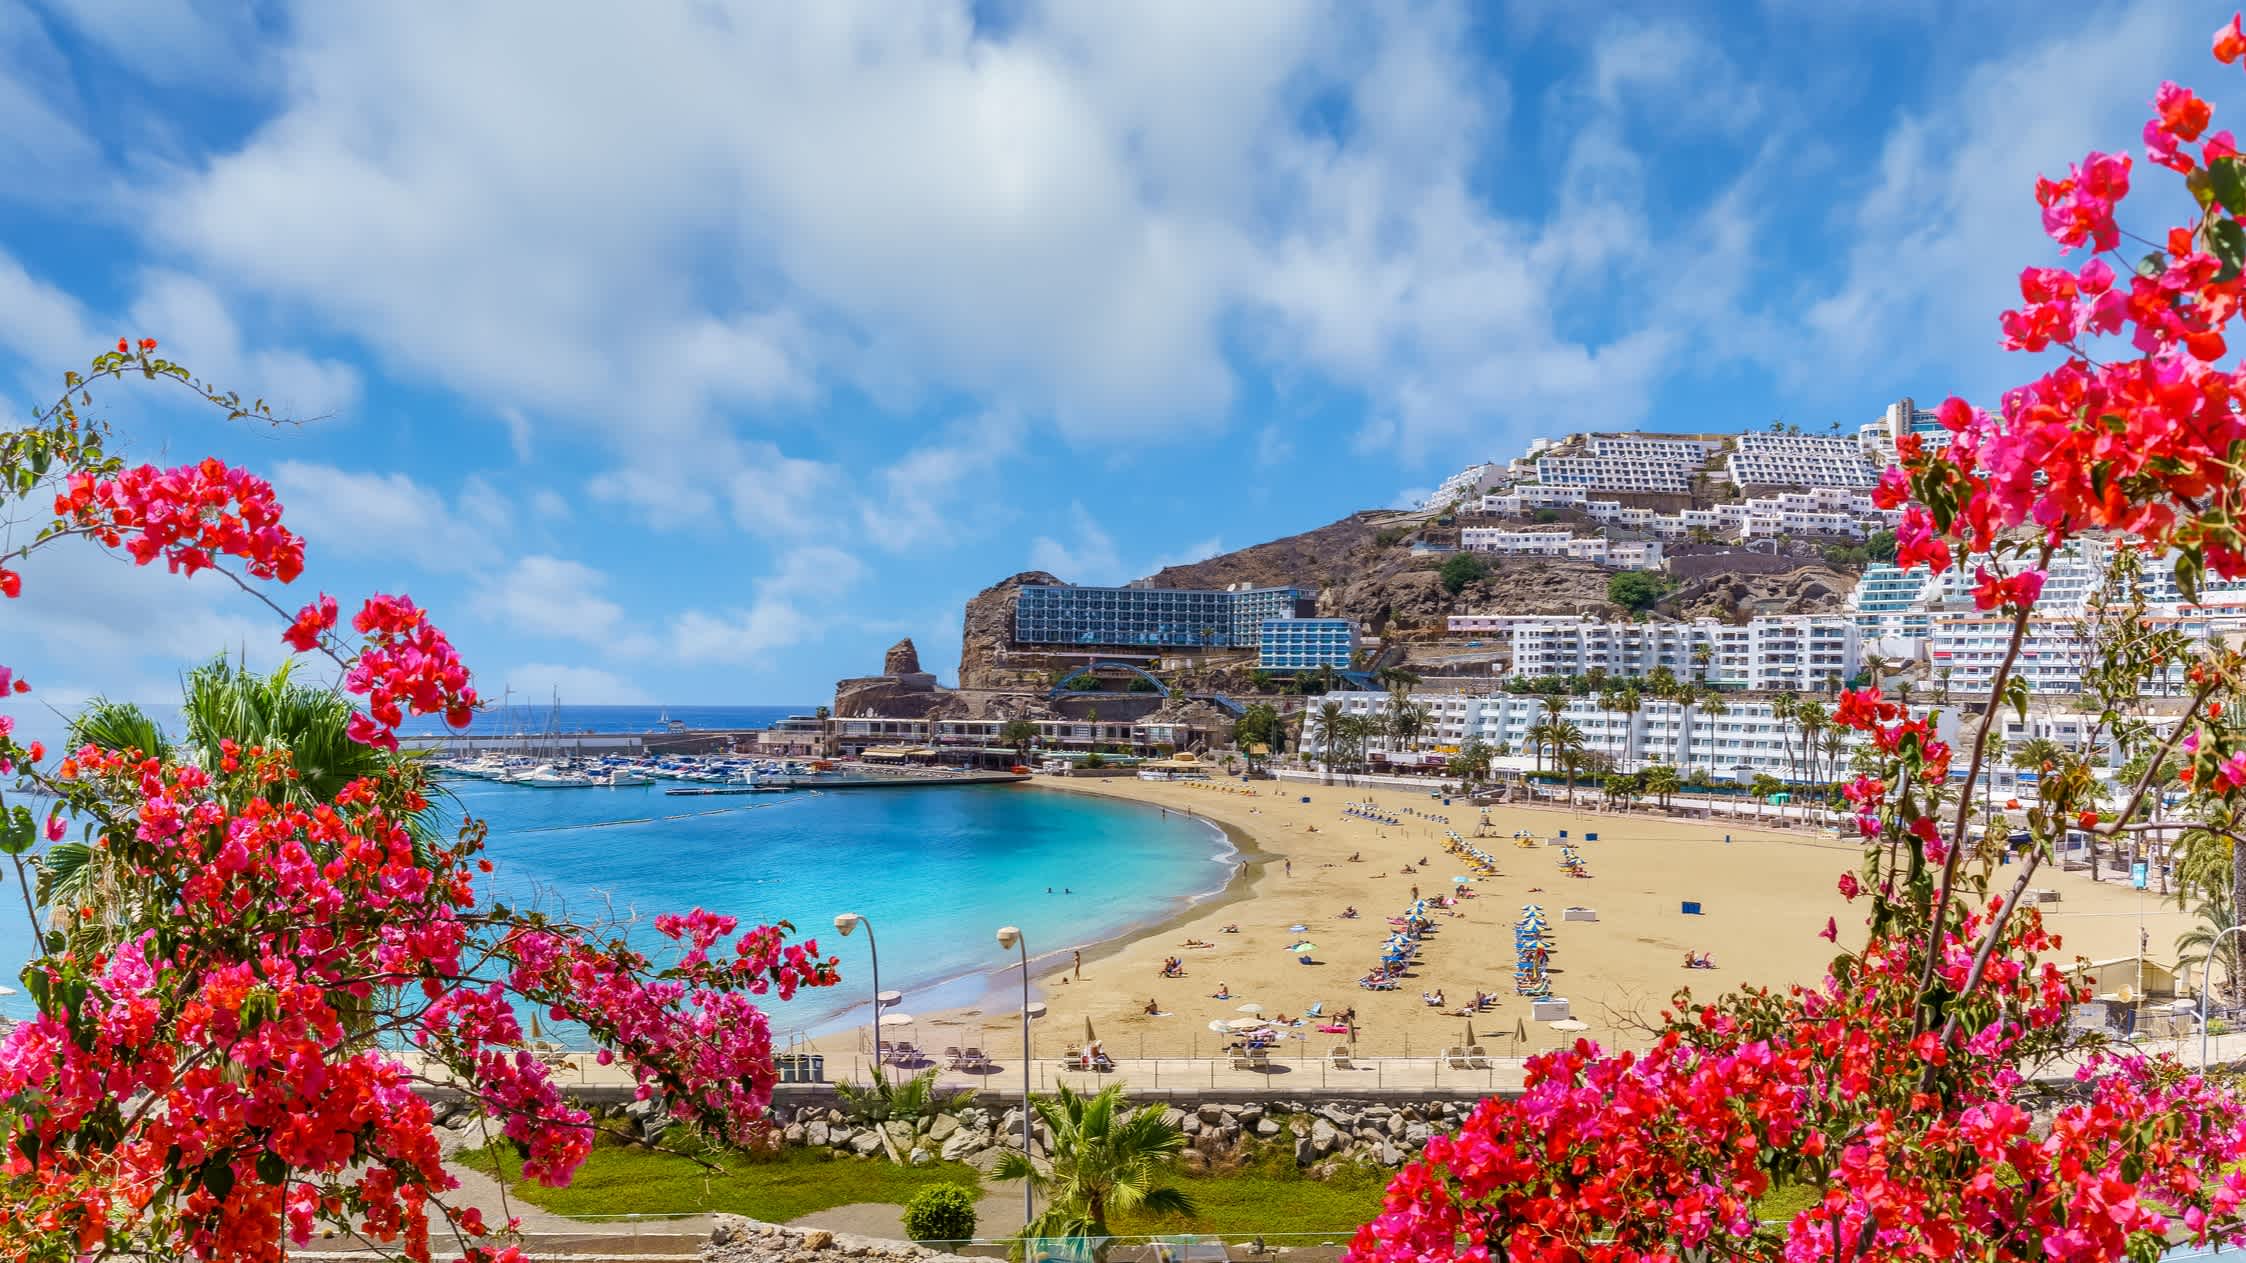 Blick auf die Bucht von Puerto Rico auf Gran Canaria mit Blumen im Vordergrund und Häusern